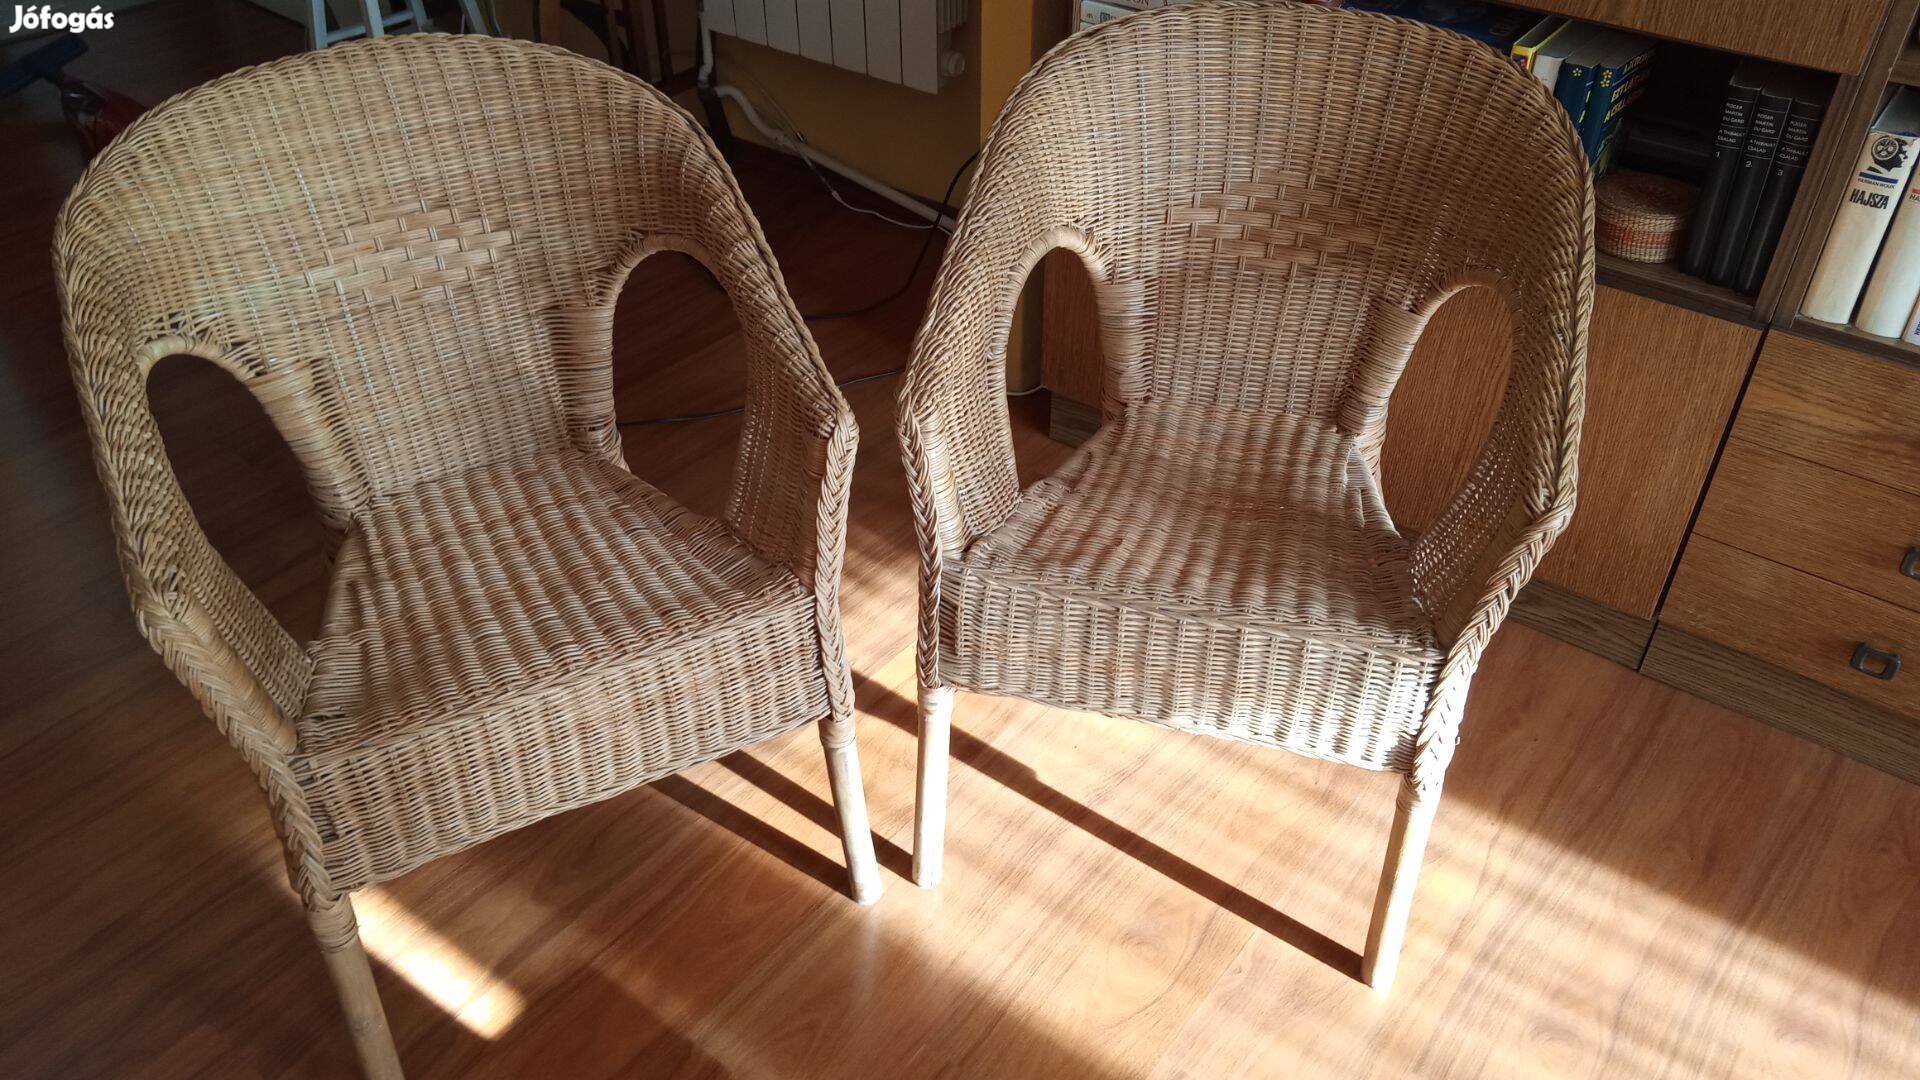 Eladó 2 db rattan/bambusz szék